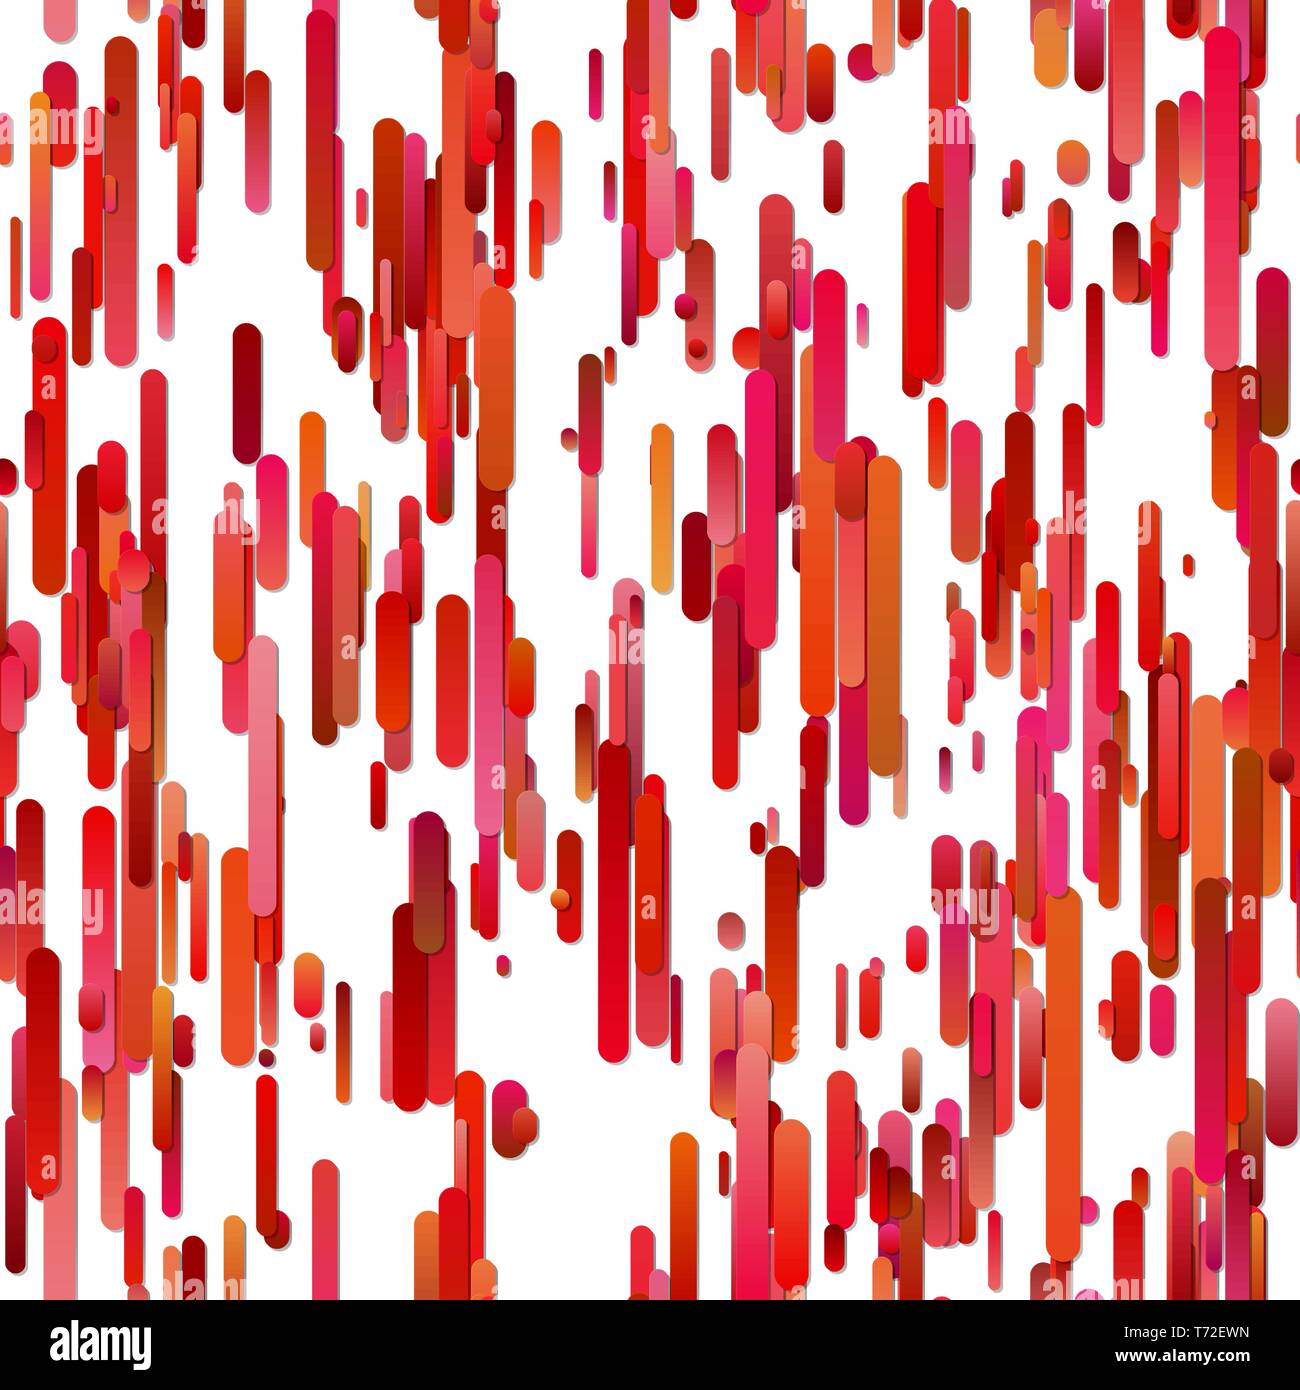 Red abstract wiederholen Vertical Gradient gerundeten Streifen Hintergrund Muster Stock Vektor